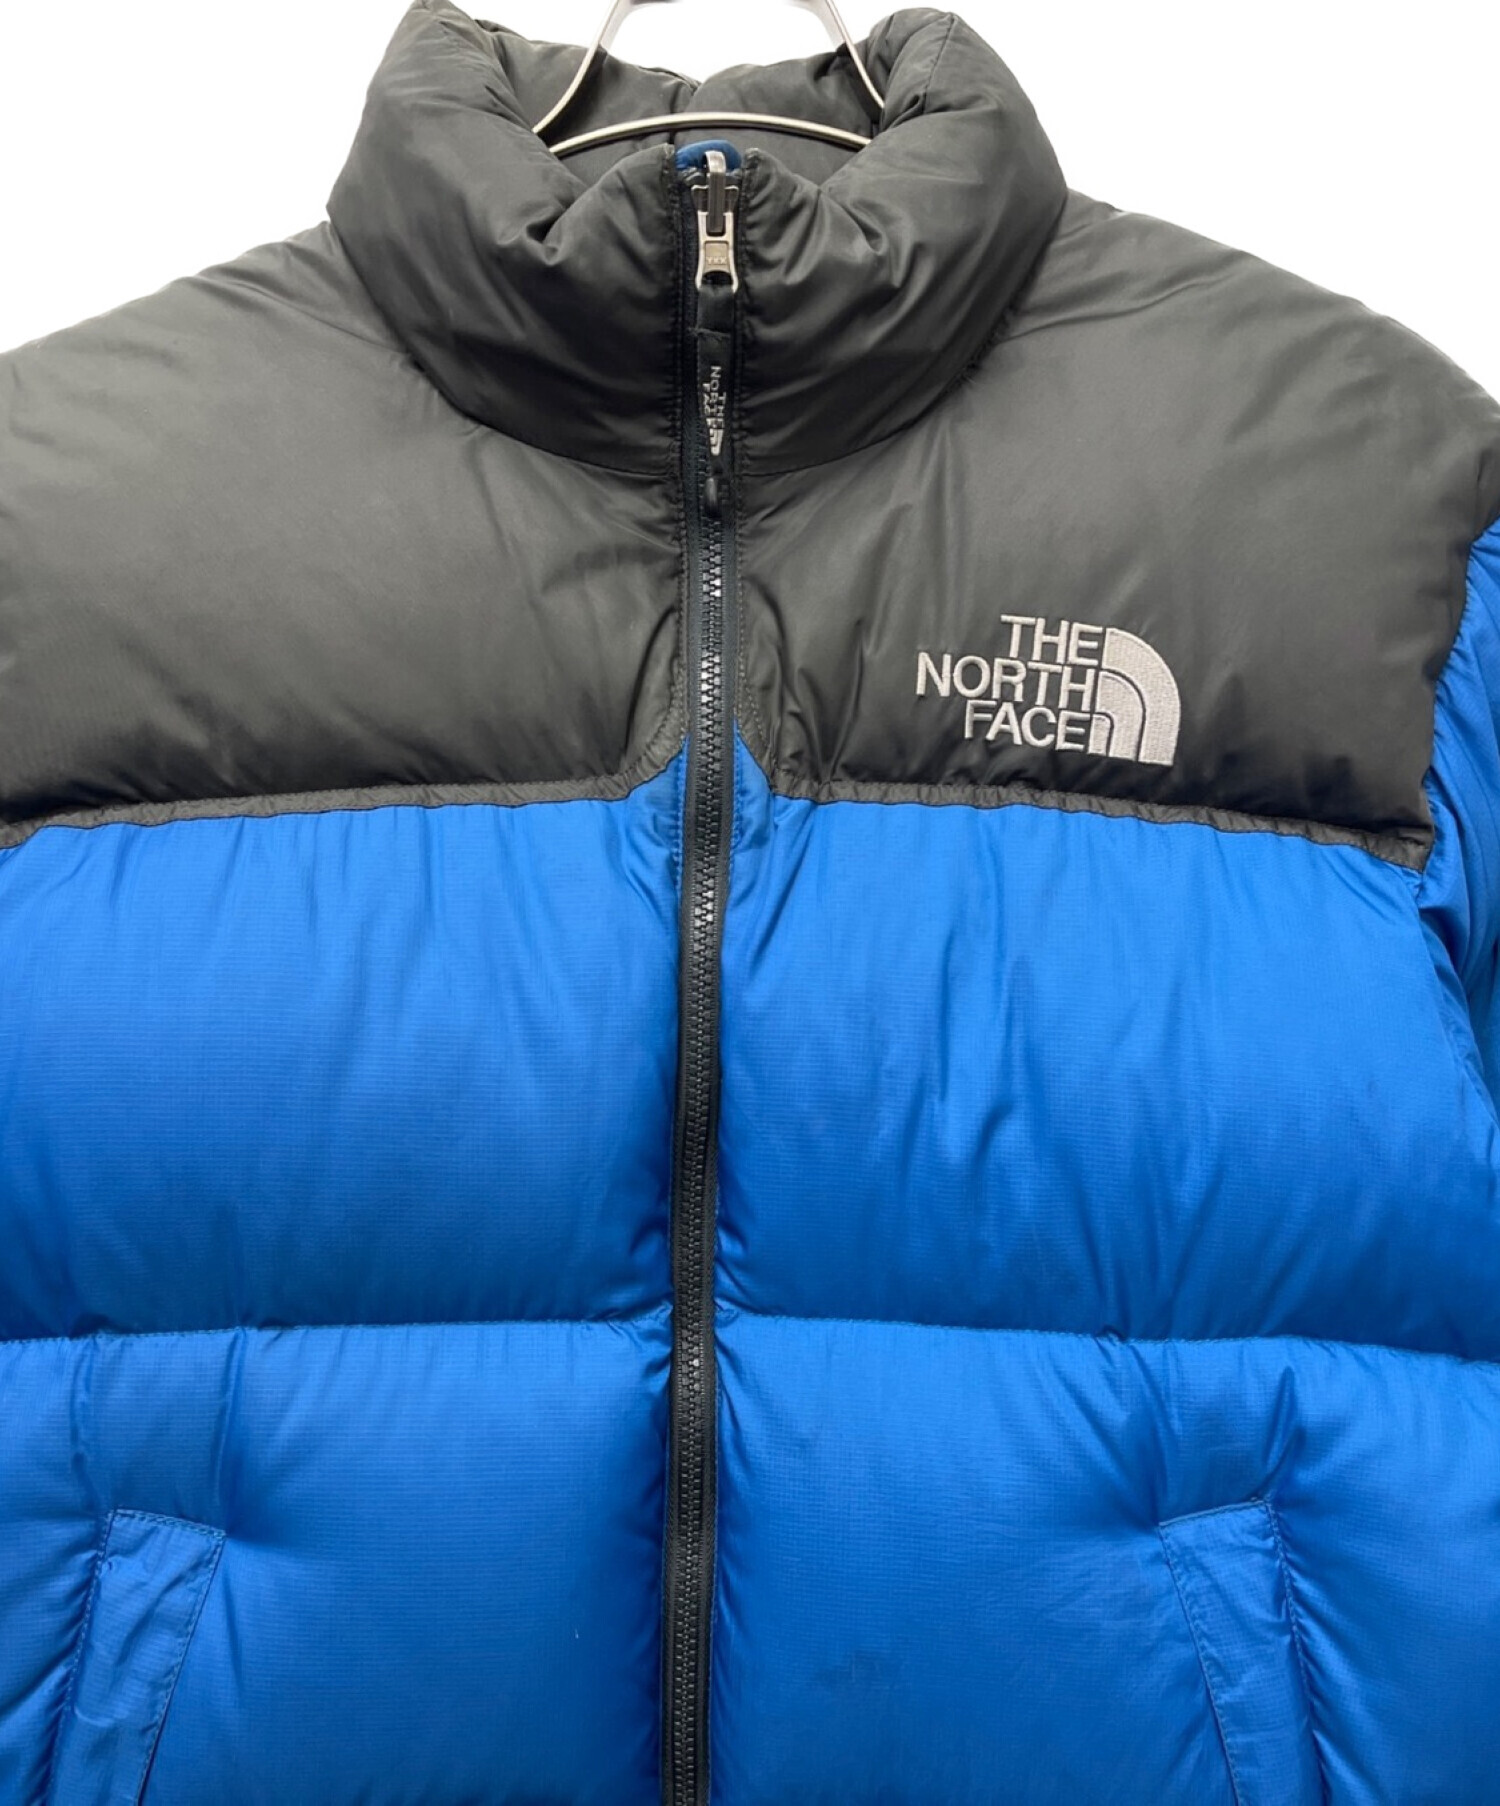 THE NORTH FACE (ザ ノース フェイス) 90sヌプシダウンジャケット ブルー×ブラック サイズ:S